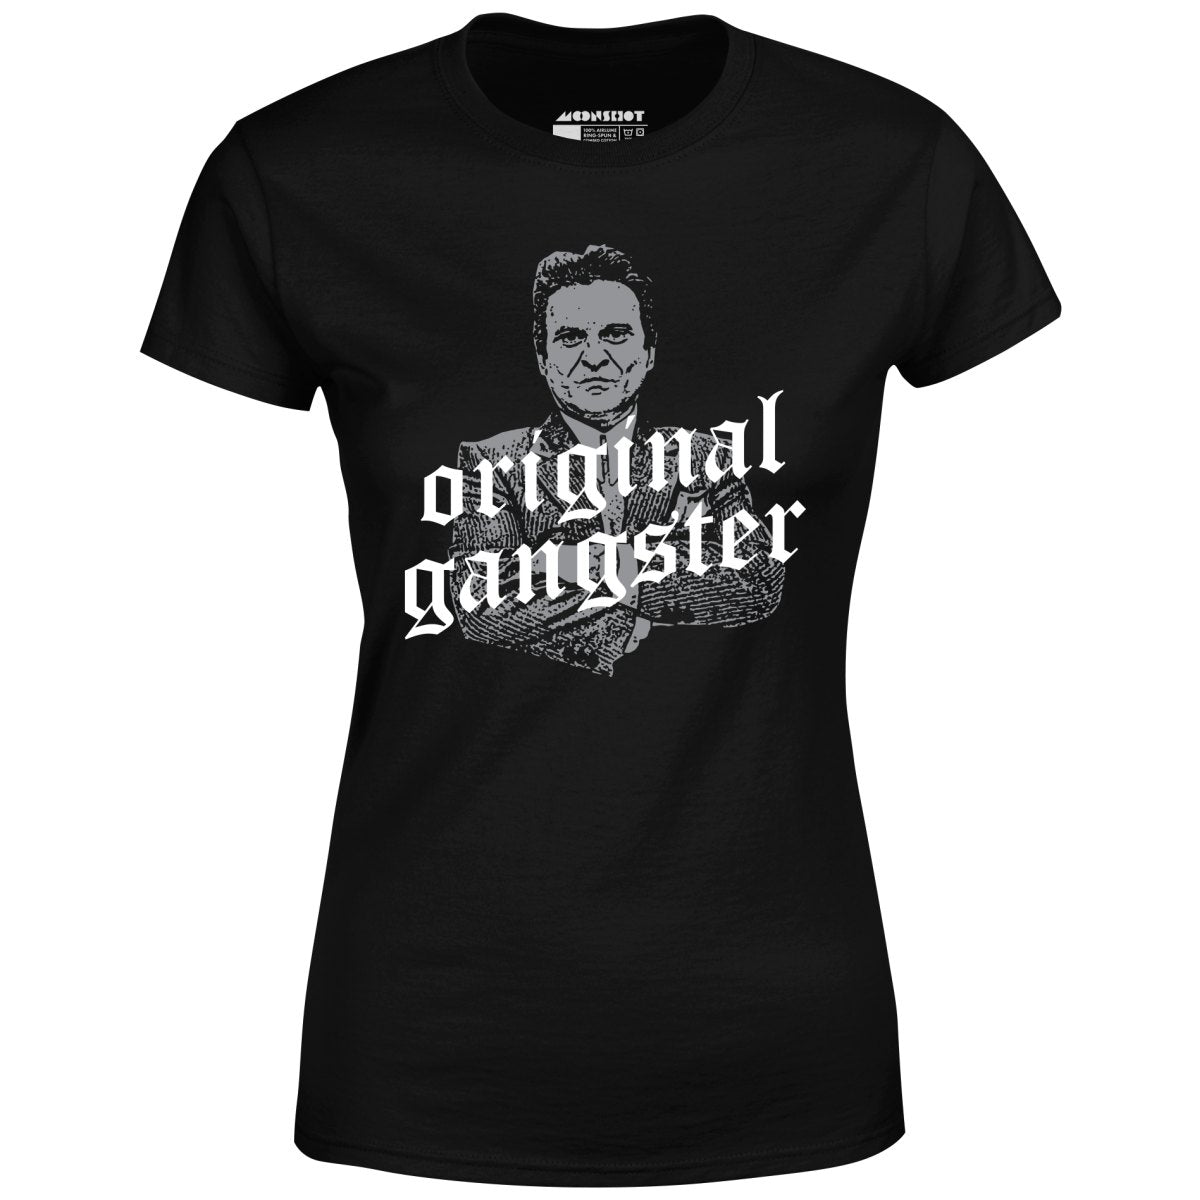 Original Gangster - Women's T-Shirt